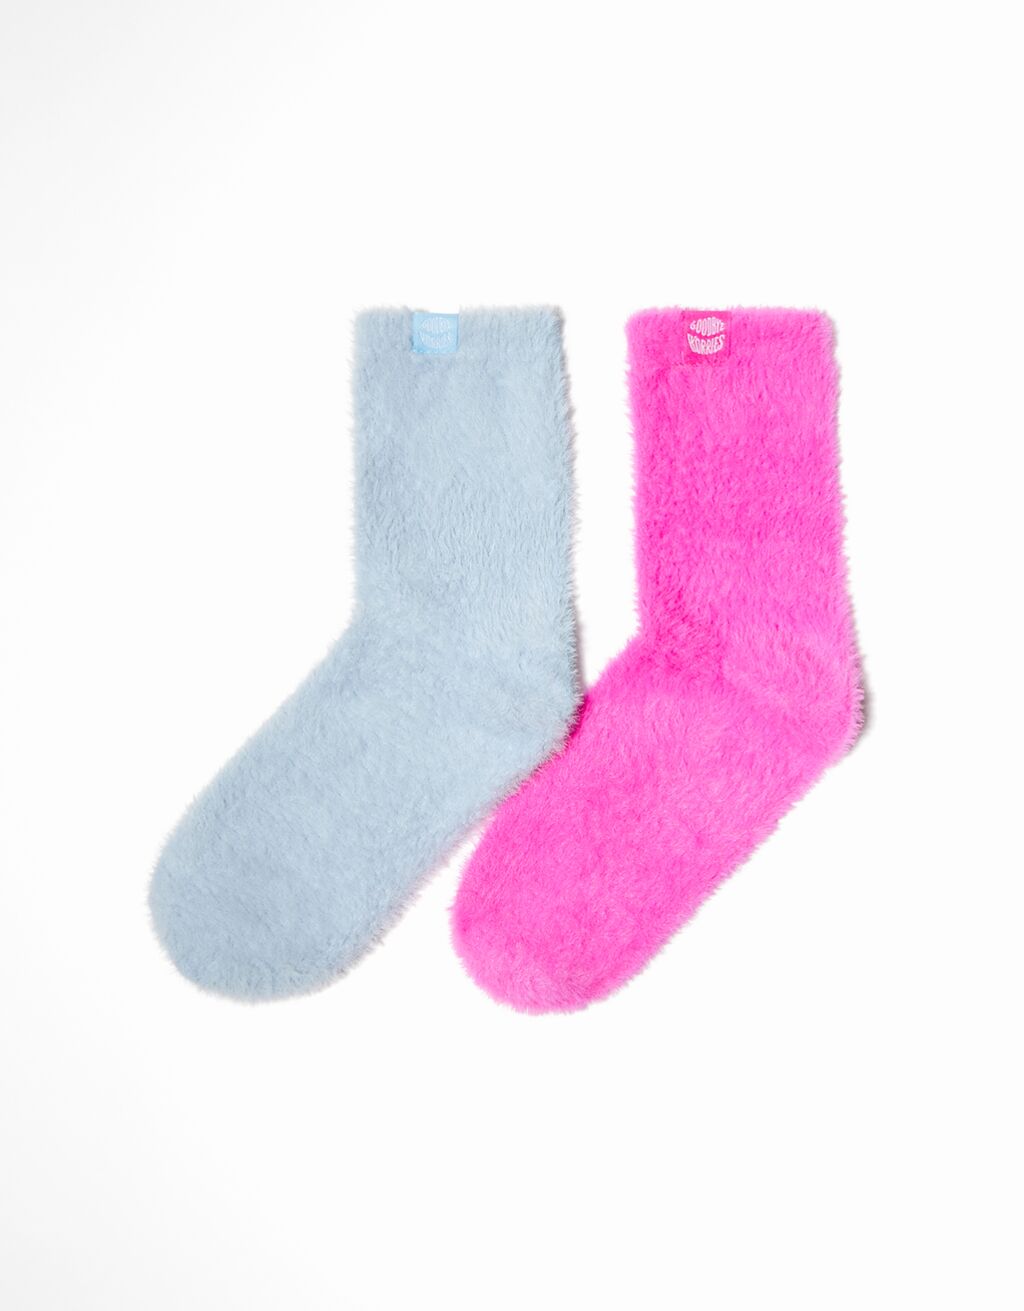 Σετ με 2 ζεύγη κάλτσες με ανάγλυφη υφή